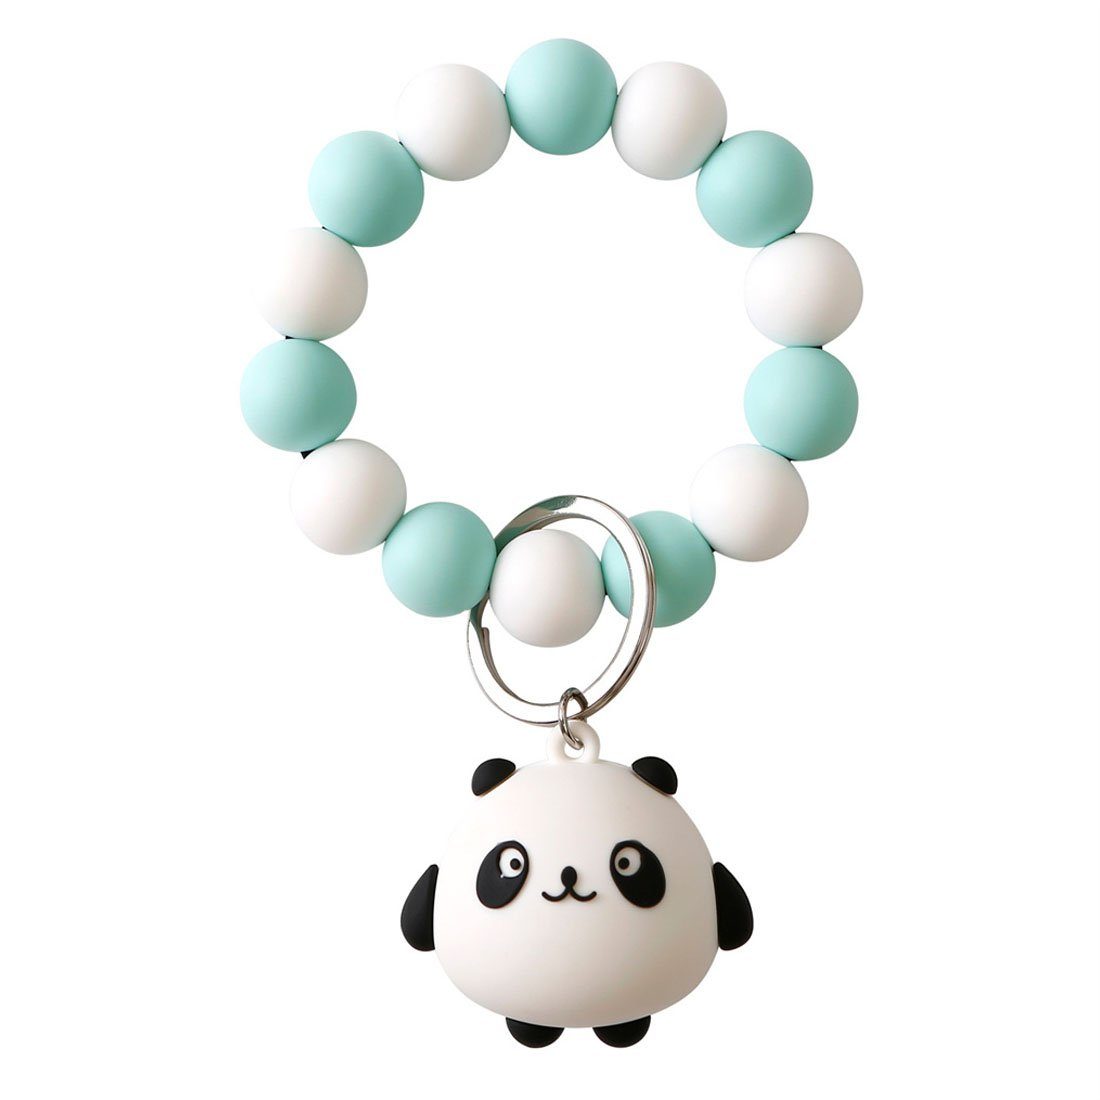 DÖRÖY Schlüsselanhänger Panda Silikon-Schlüsselanhänger für das Handgelenk mit Perlen grün